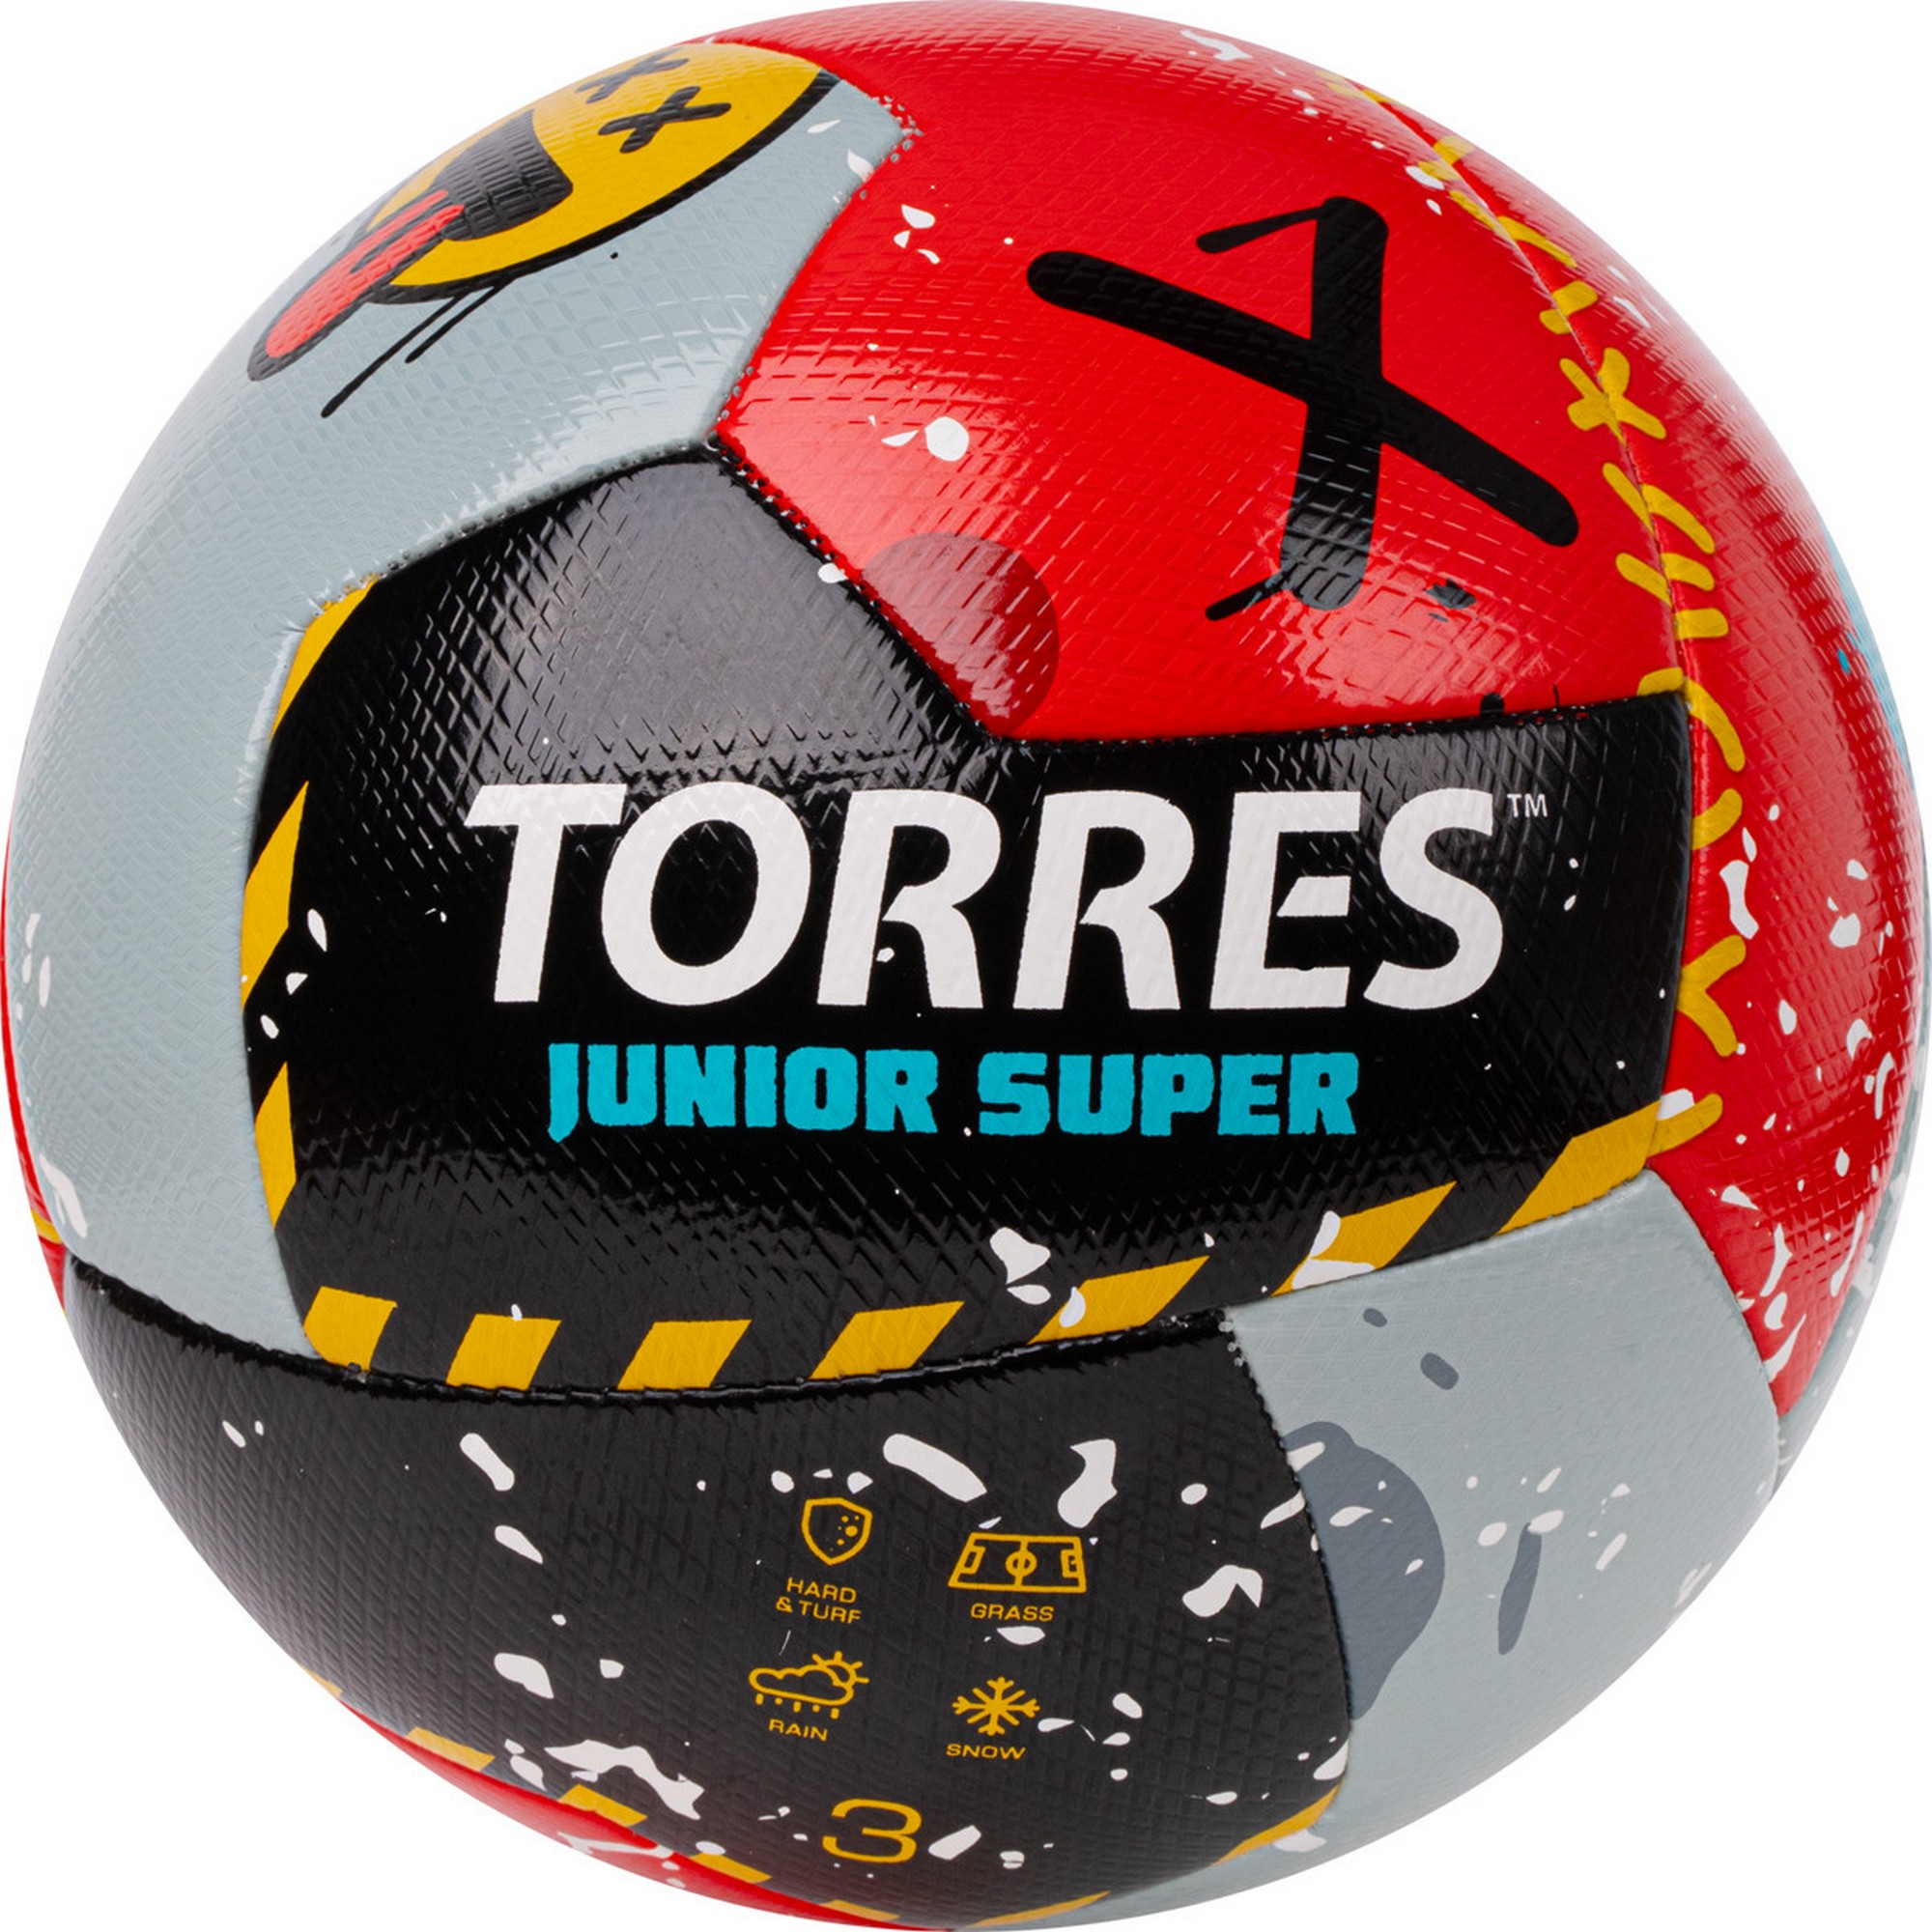   Torres Junior-3 Super F323303 .3